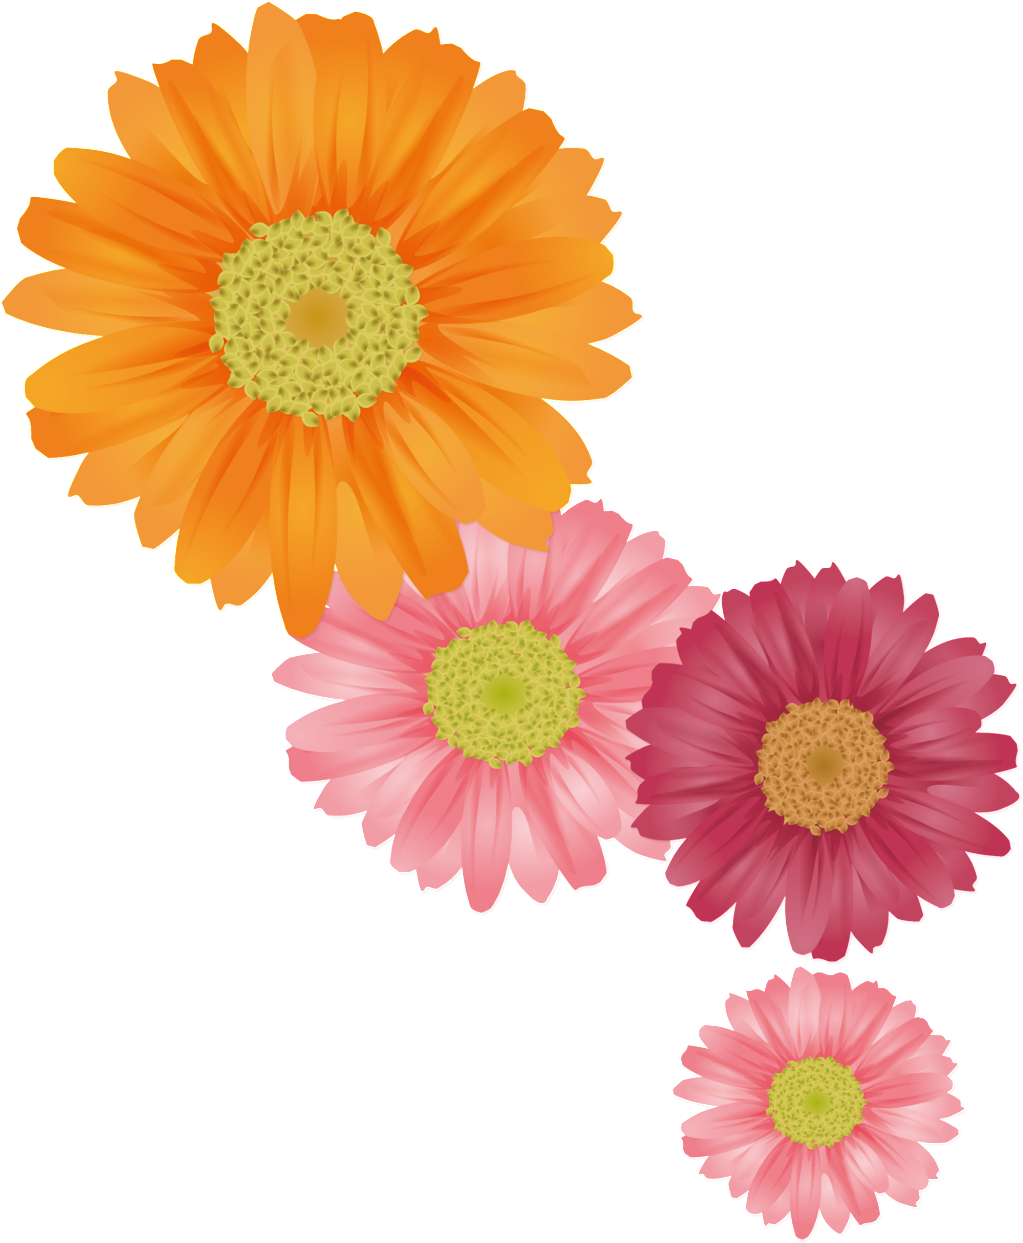 新鲜的橙色手绘菊花、夏季花卉